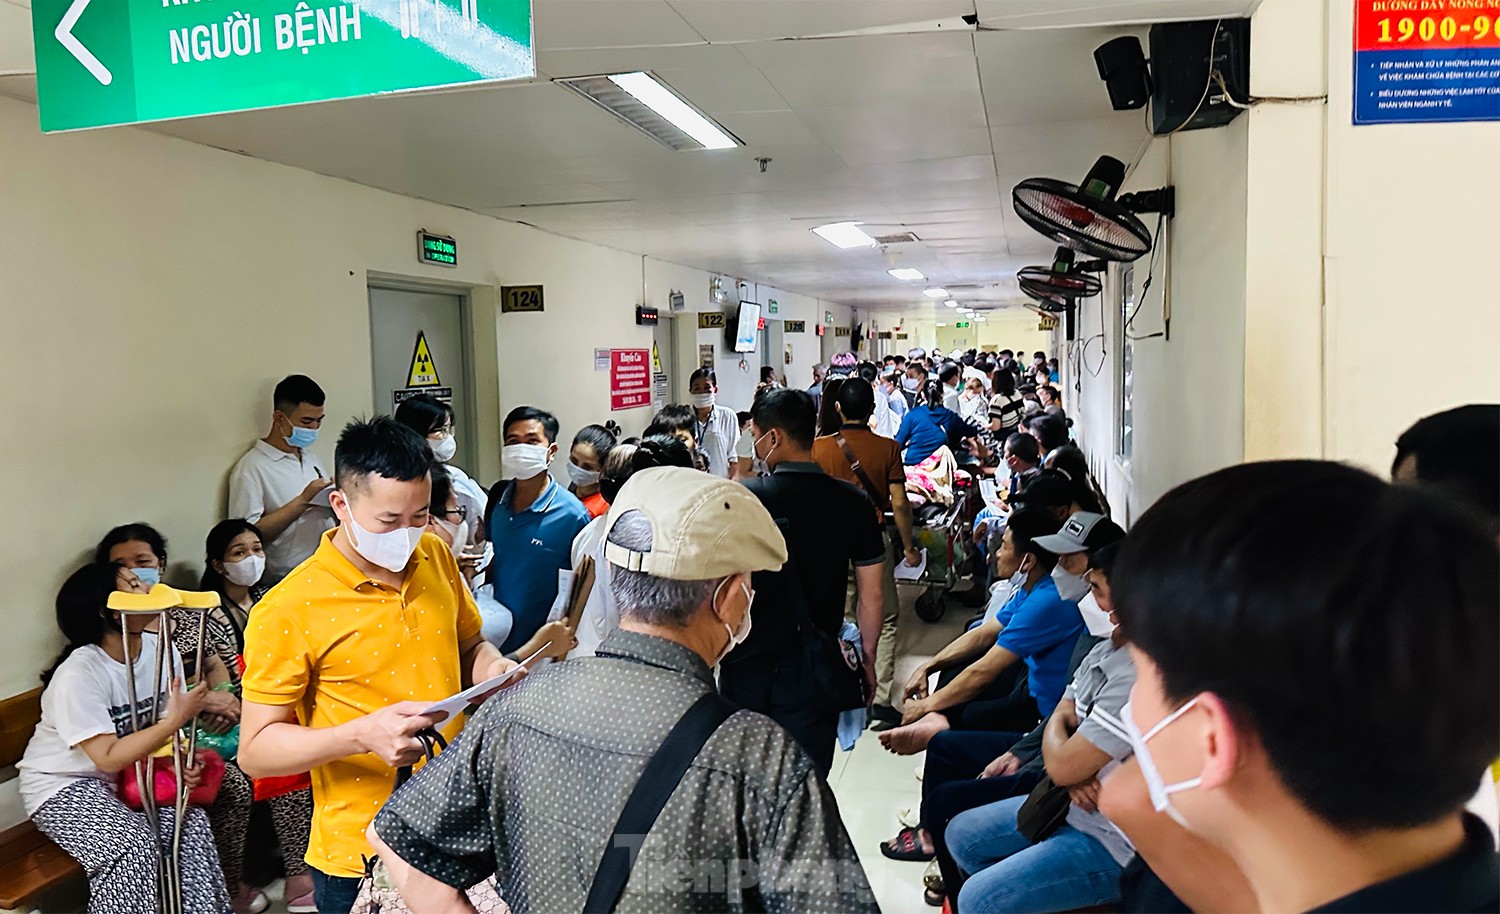 Bệnh viện đông nghịt người xếp hàng chờ khám trong ngày hè nóng 37 độ - Ảnh 4.